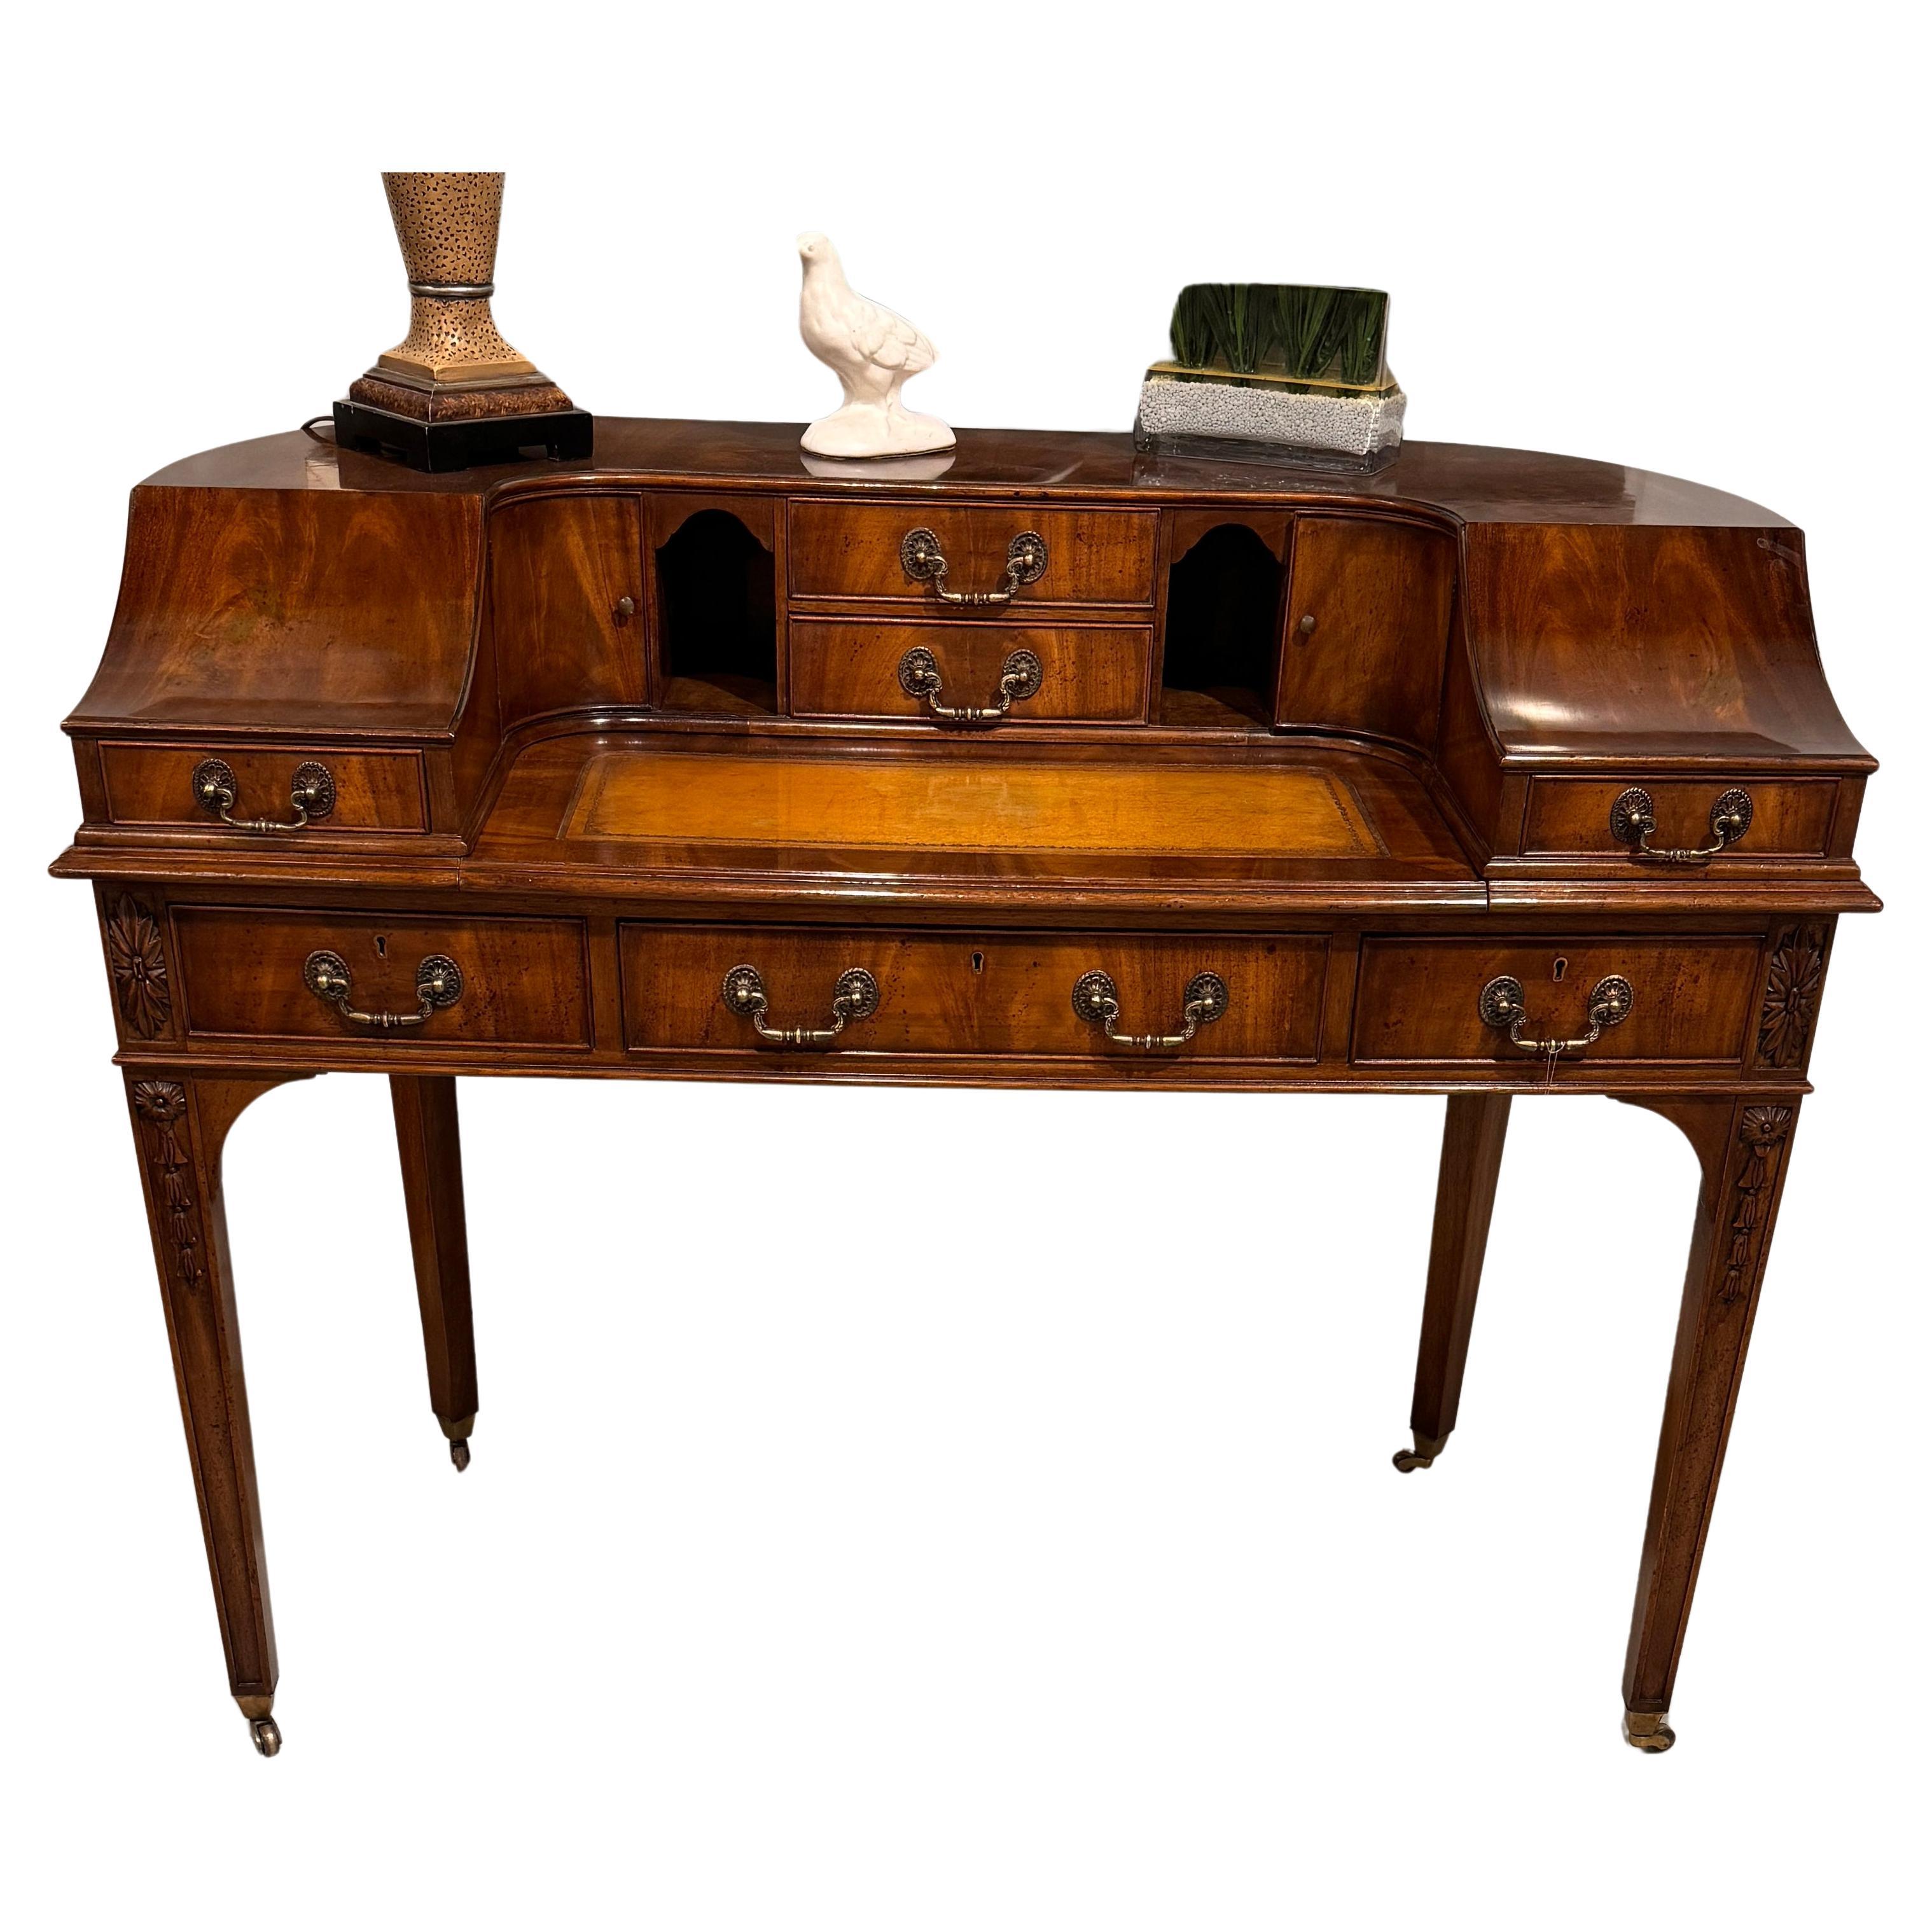 Hier ist unser Vintage Carlton House-Schreibtisch,  Englischer Stil mit Lederschreibfläche.  Ein wunderschönes geflammtes Mahagonifurnier mit einem lebendigen Muster machen dieses Möbelstück zu einem echten Schmuckstück.  Mit sieben Schubladen und